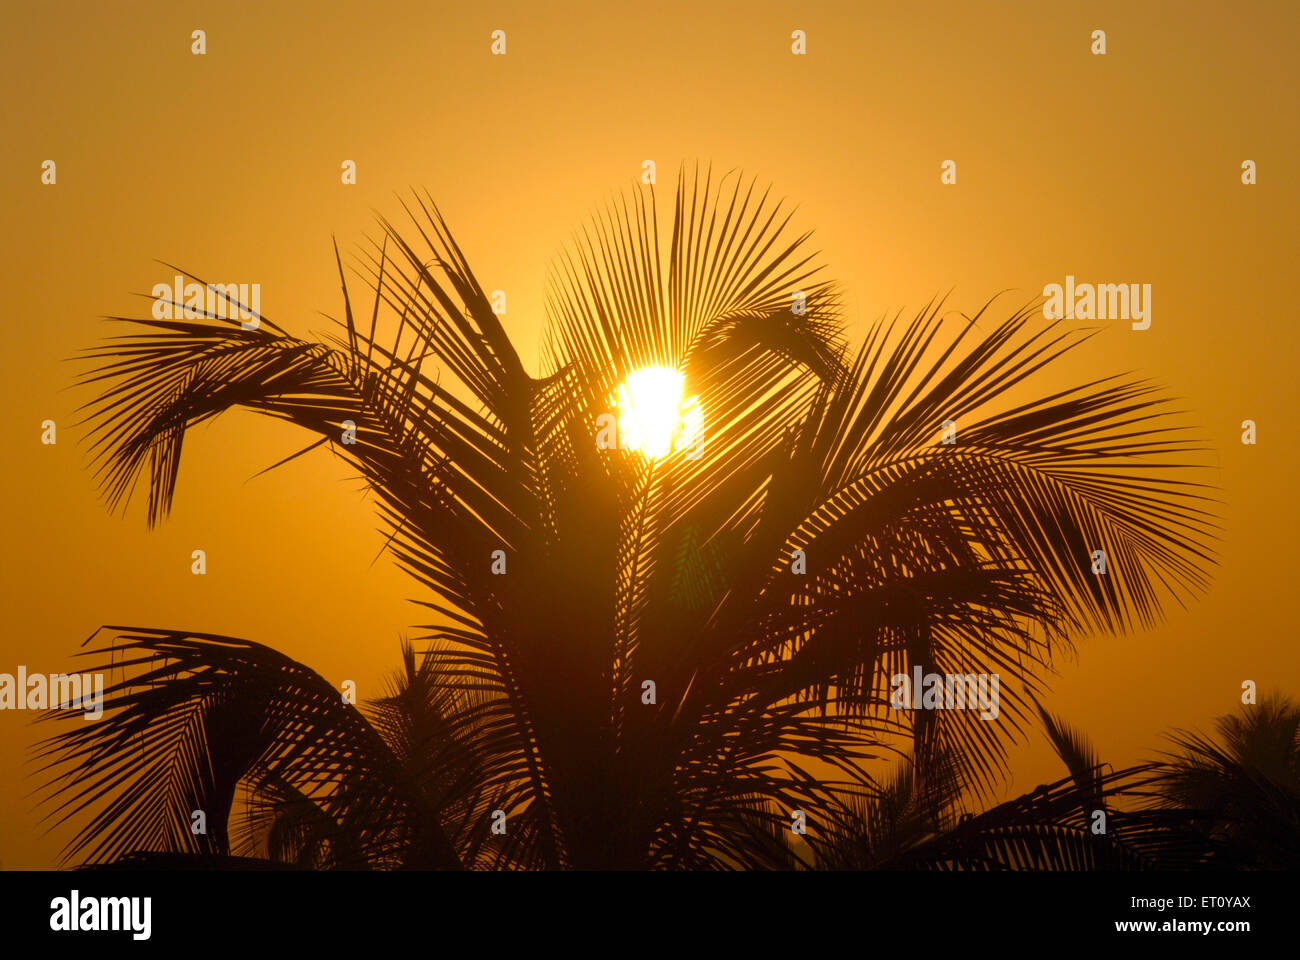 Sunrise behind palm tree Stock Photo